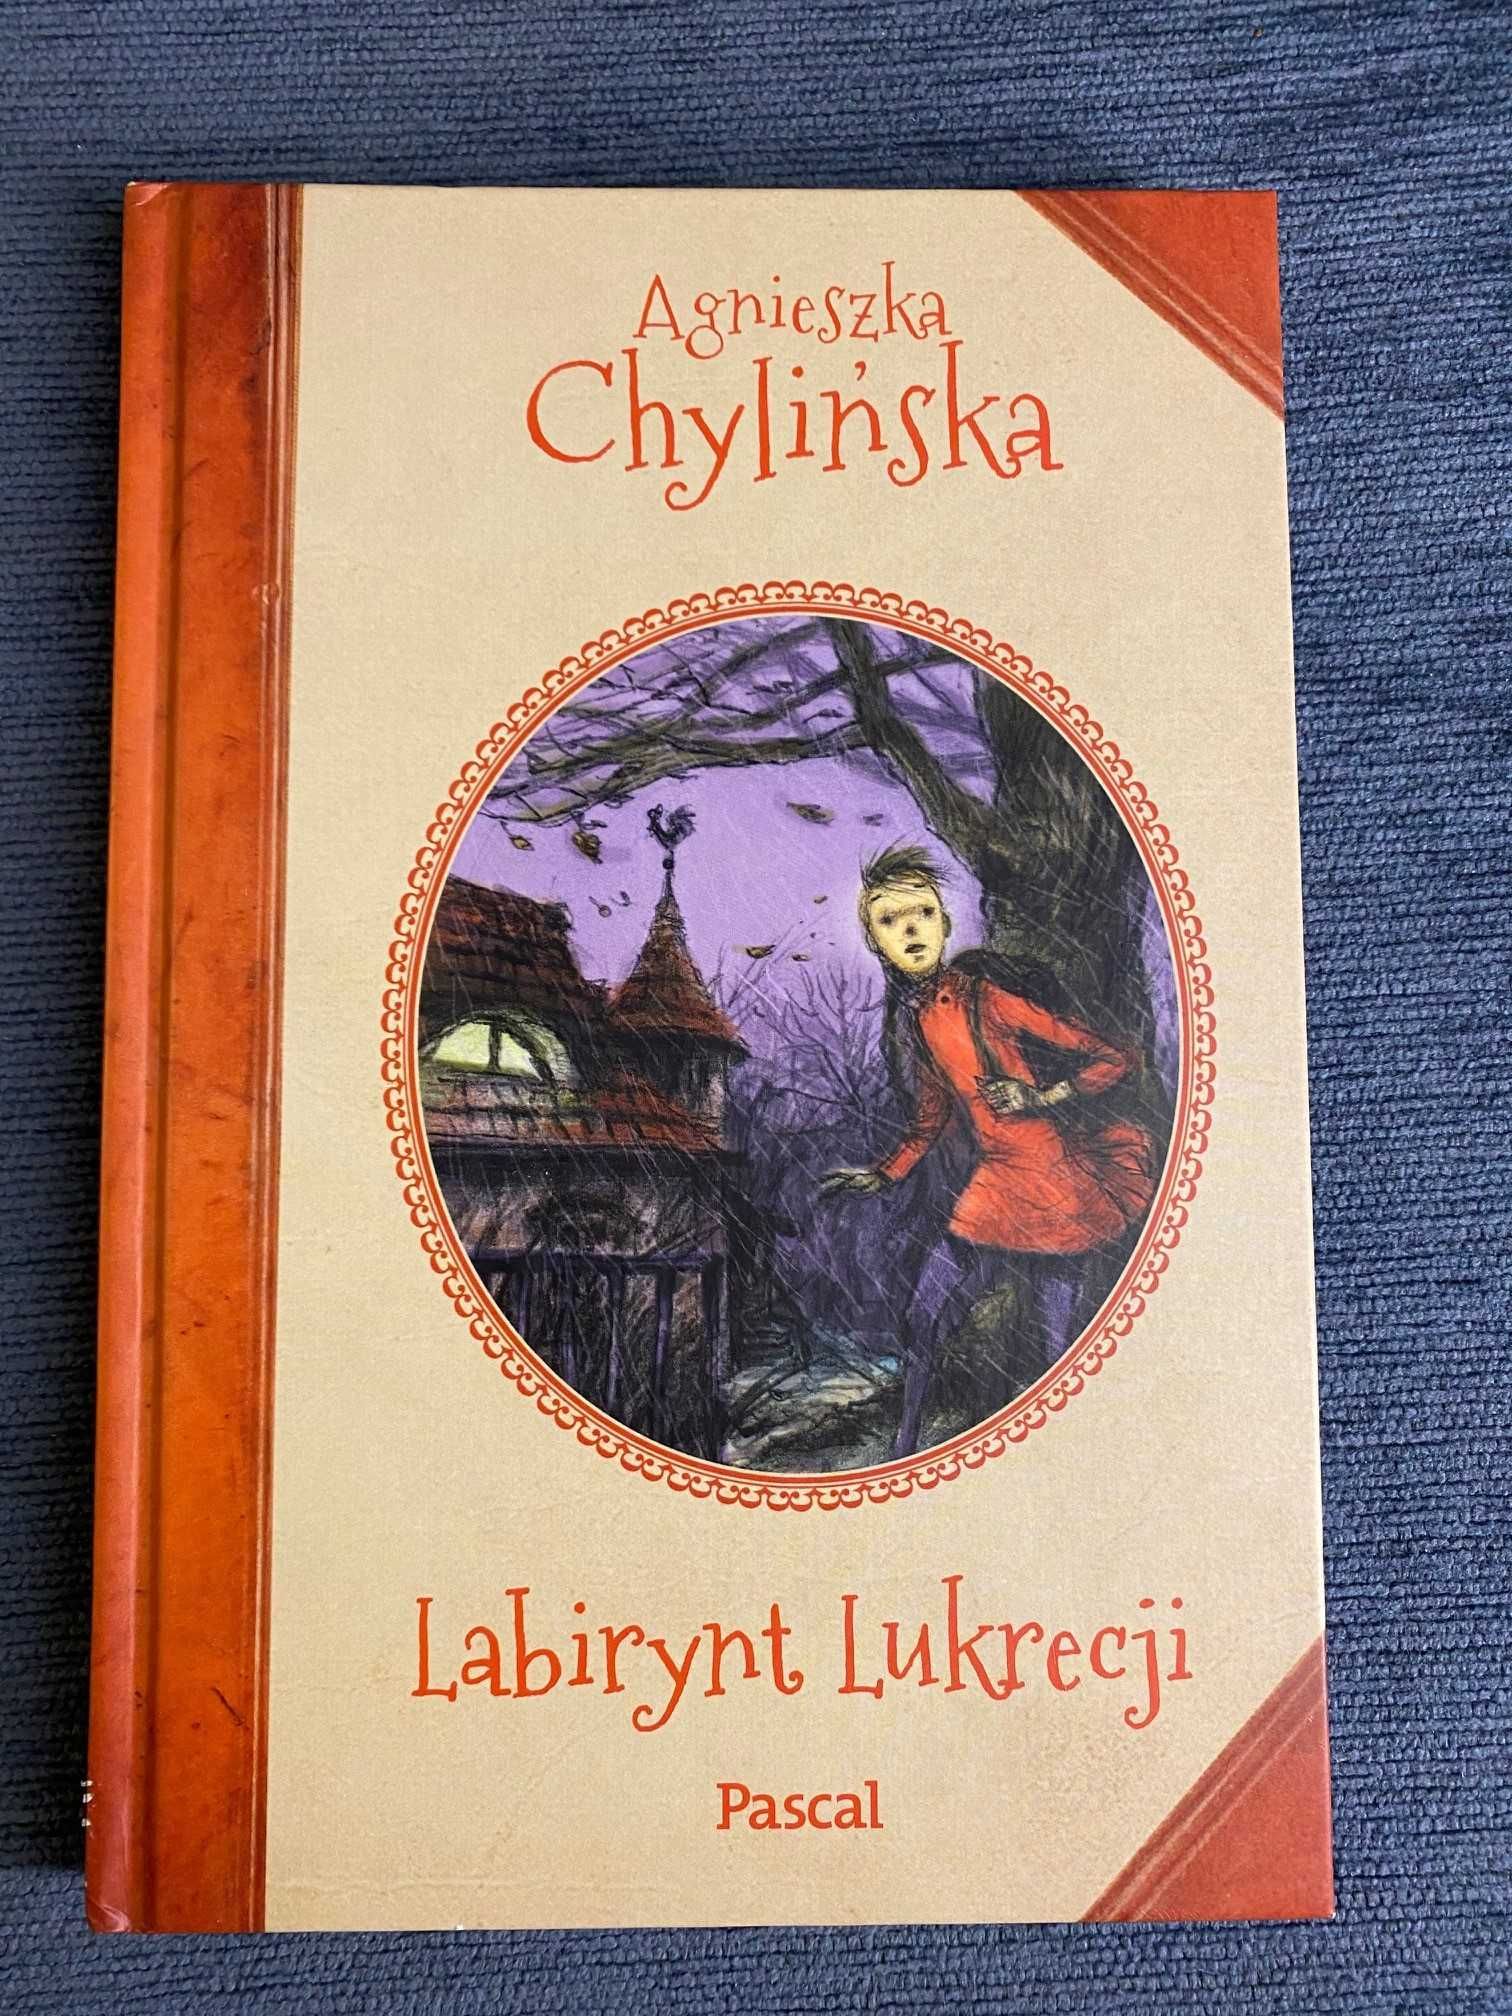 Labirynt Lukrecji, Agnieszka Chylińska